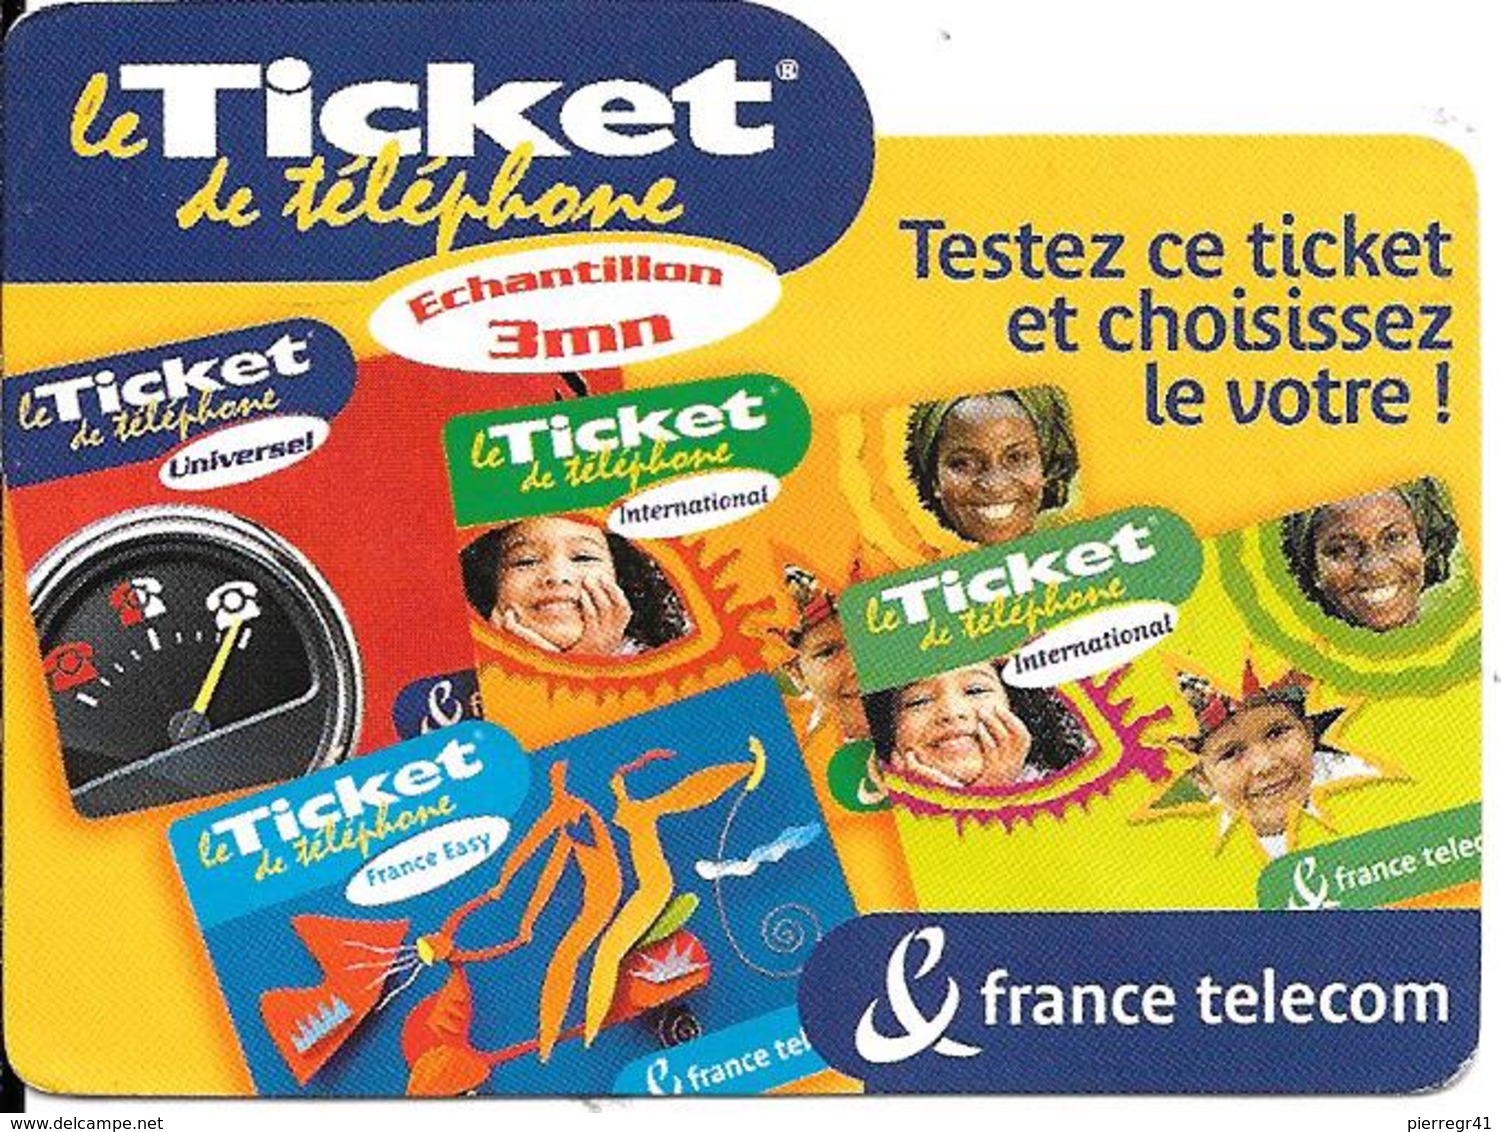 TICKET TELEPHONE-FRANCE-ECHANTILLON 3Mn-Exp 31/01/2002 Gratté-TBE - FT